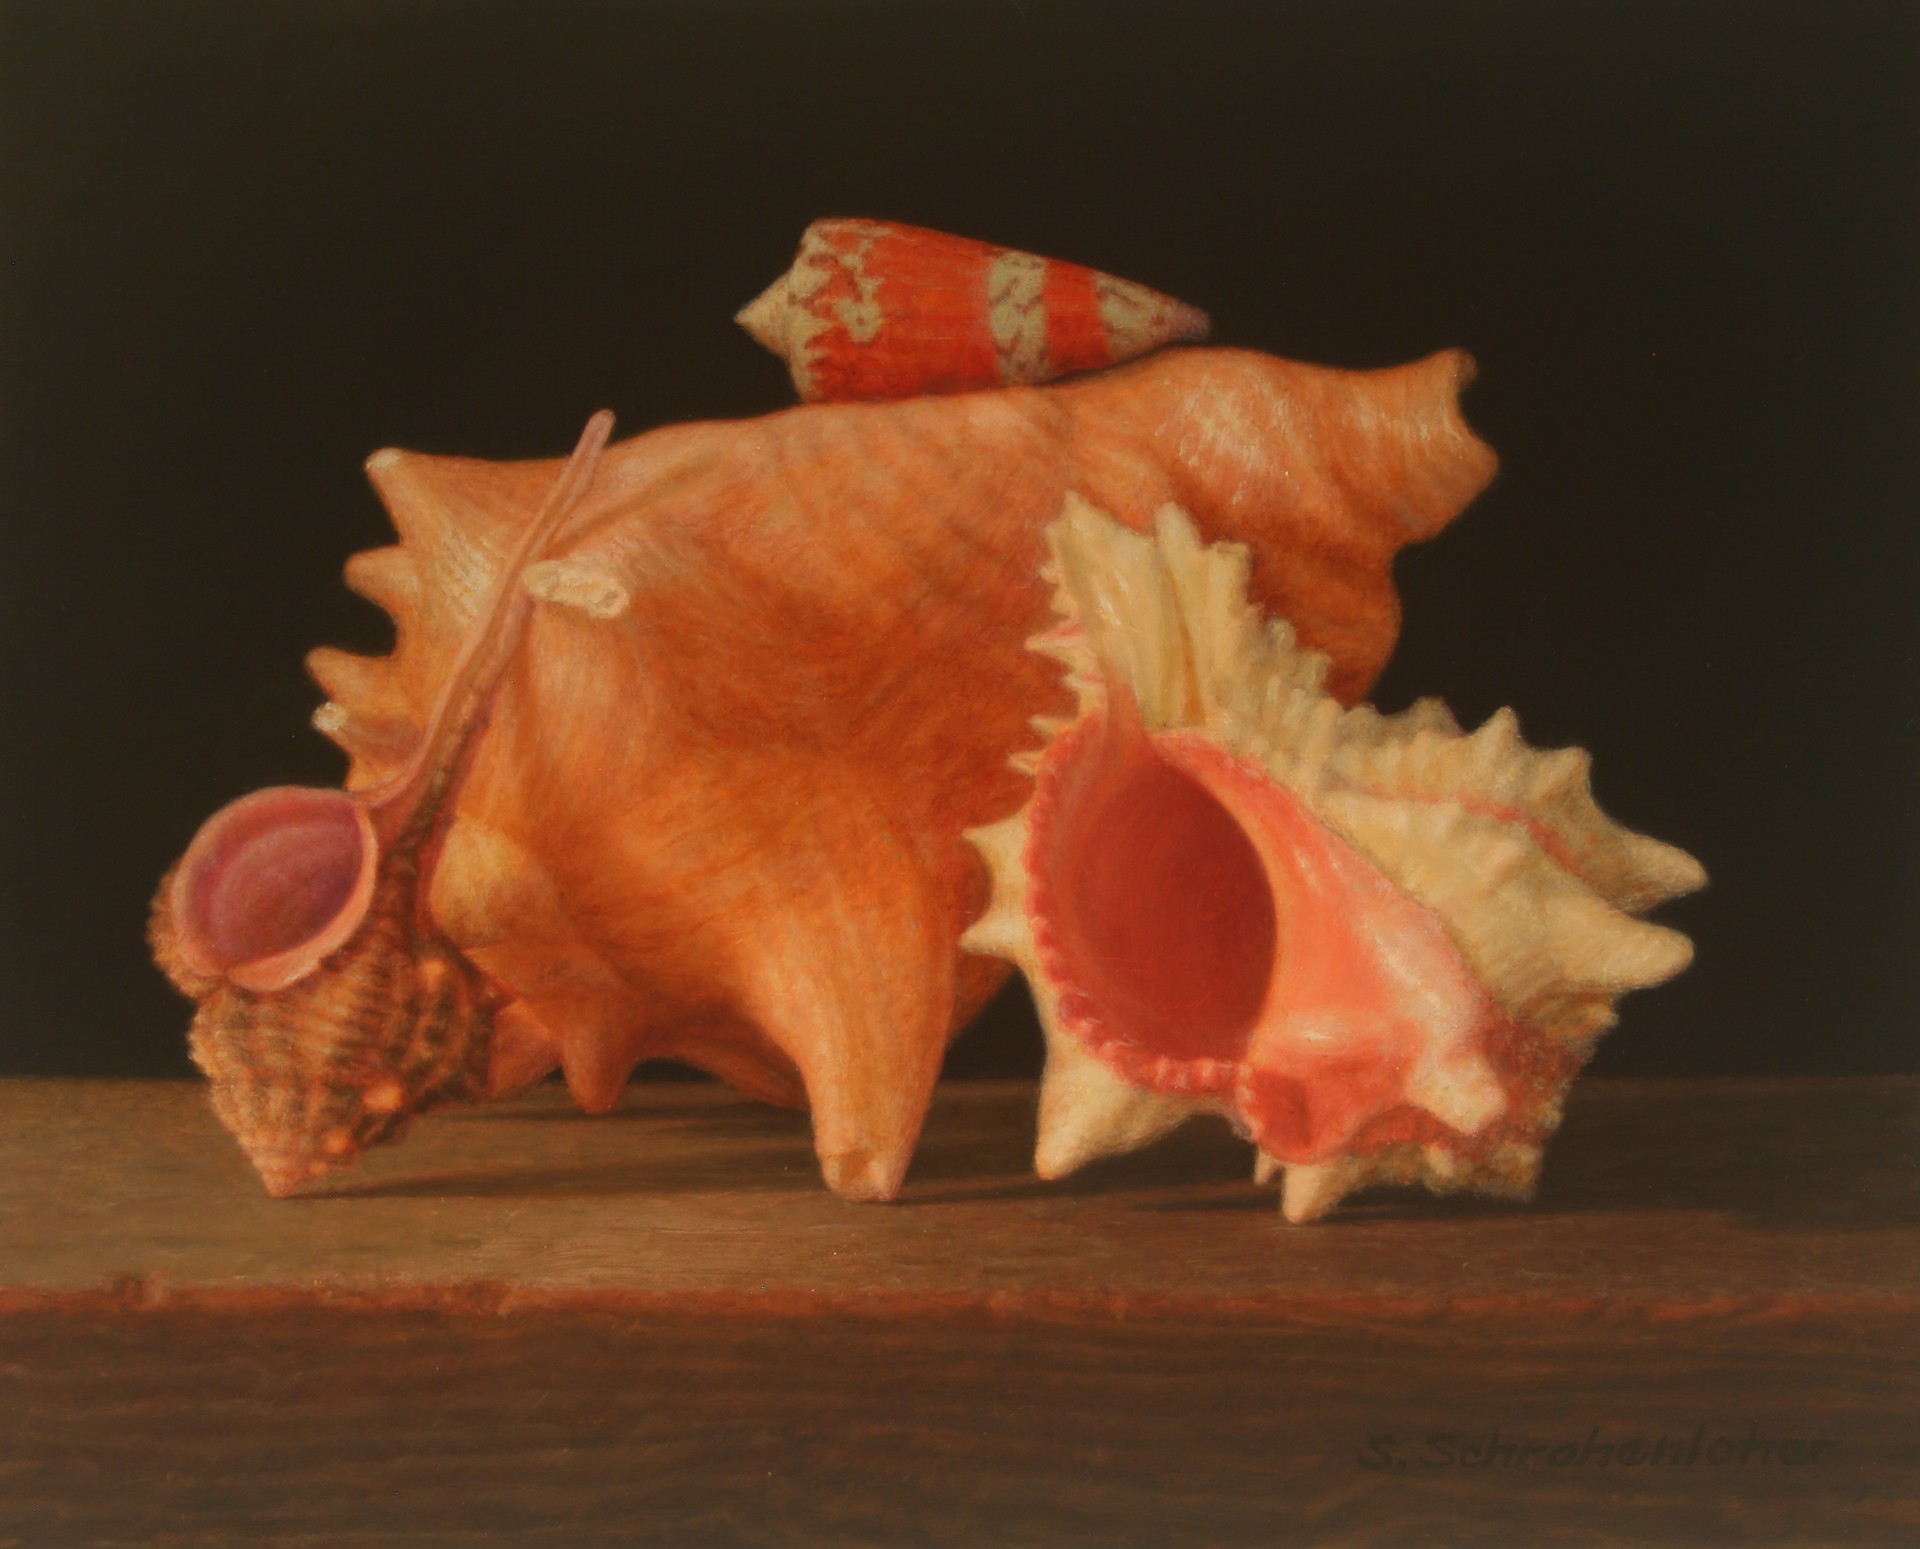 Ocean Shells by Sally Schrohenloher